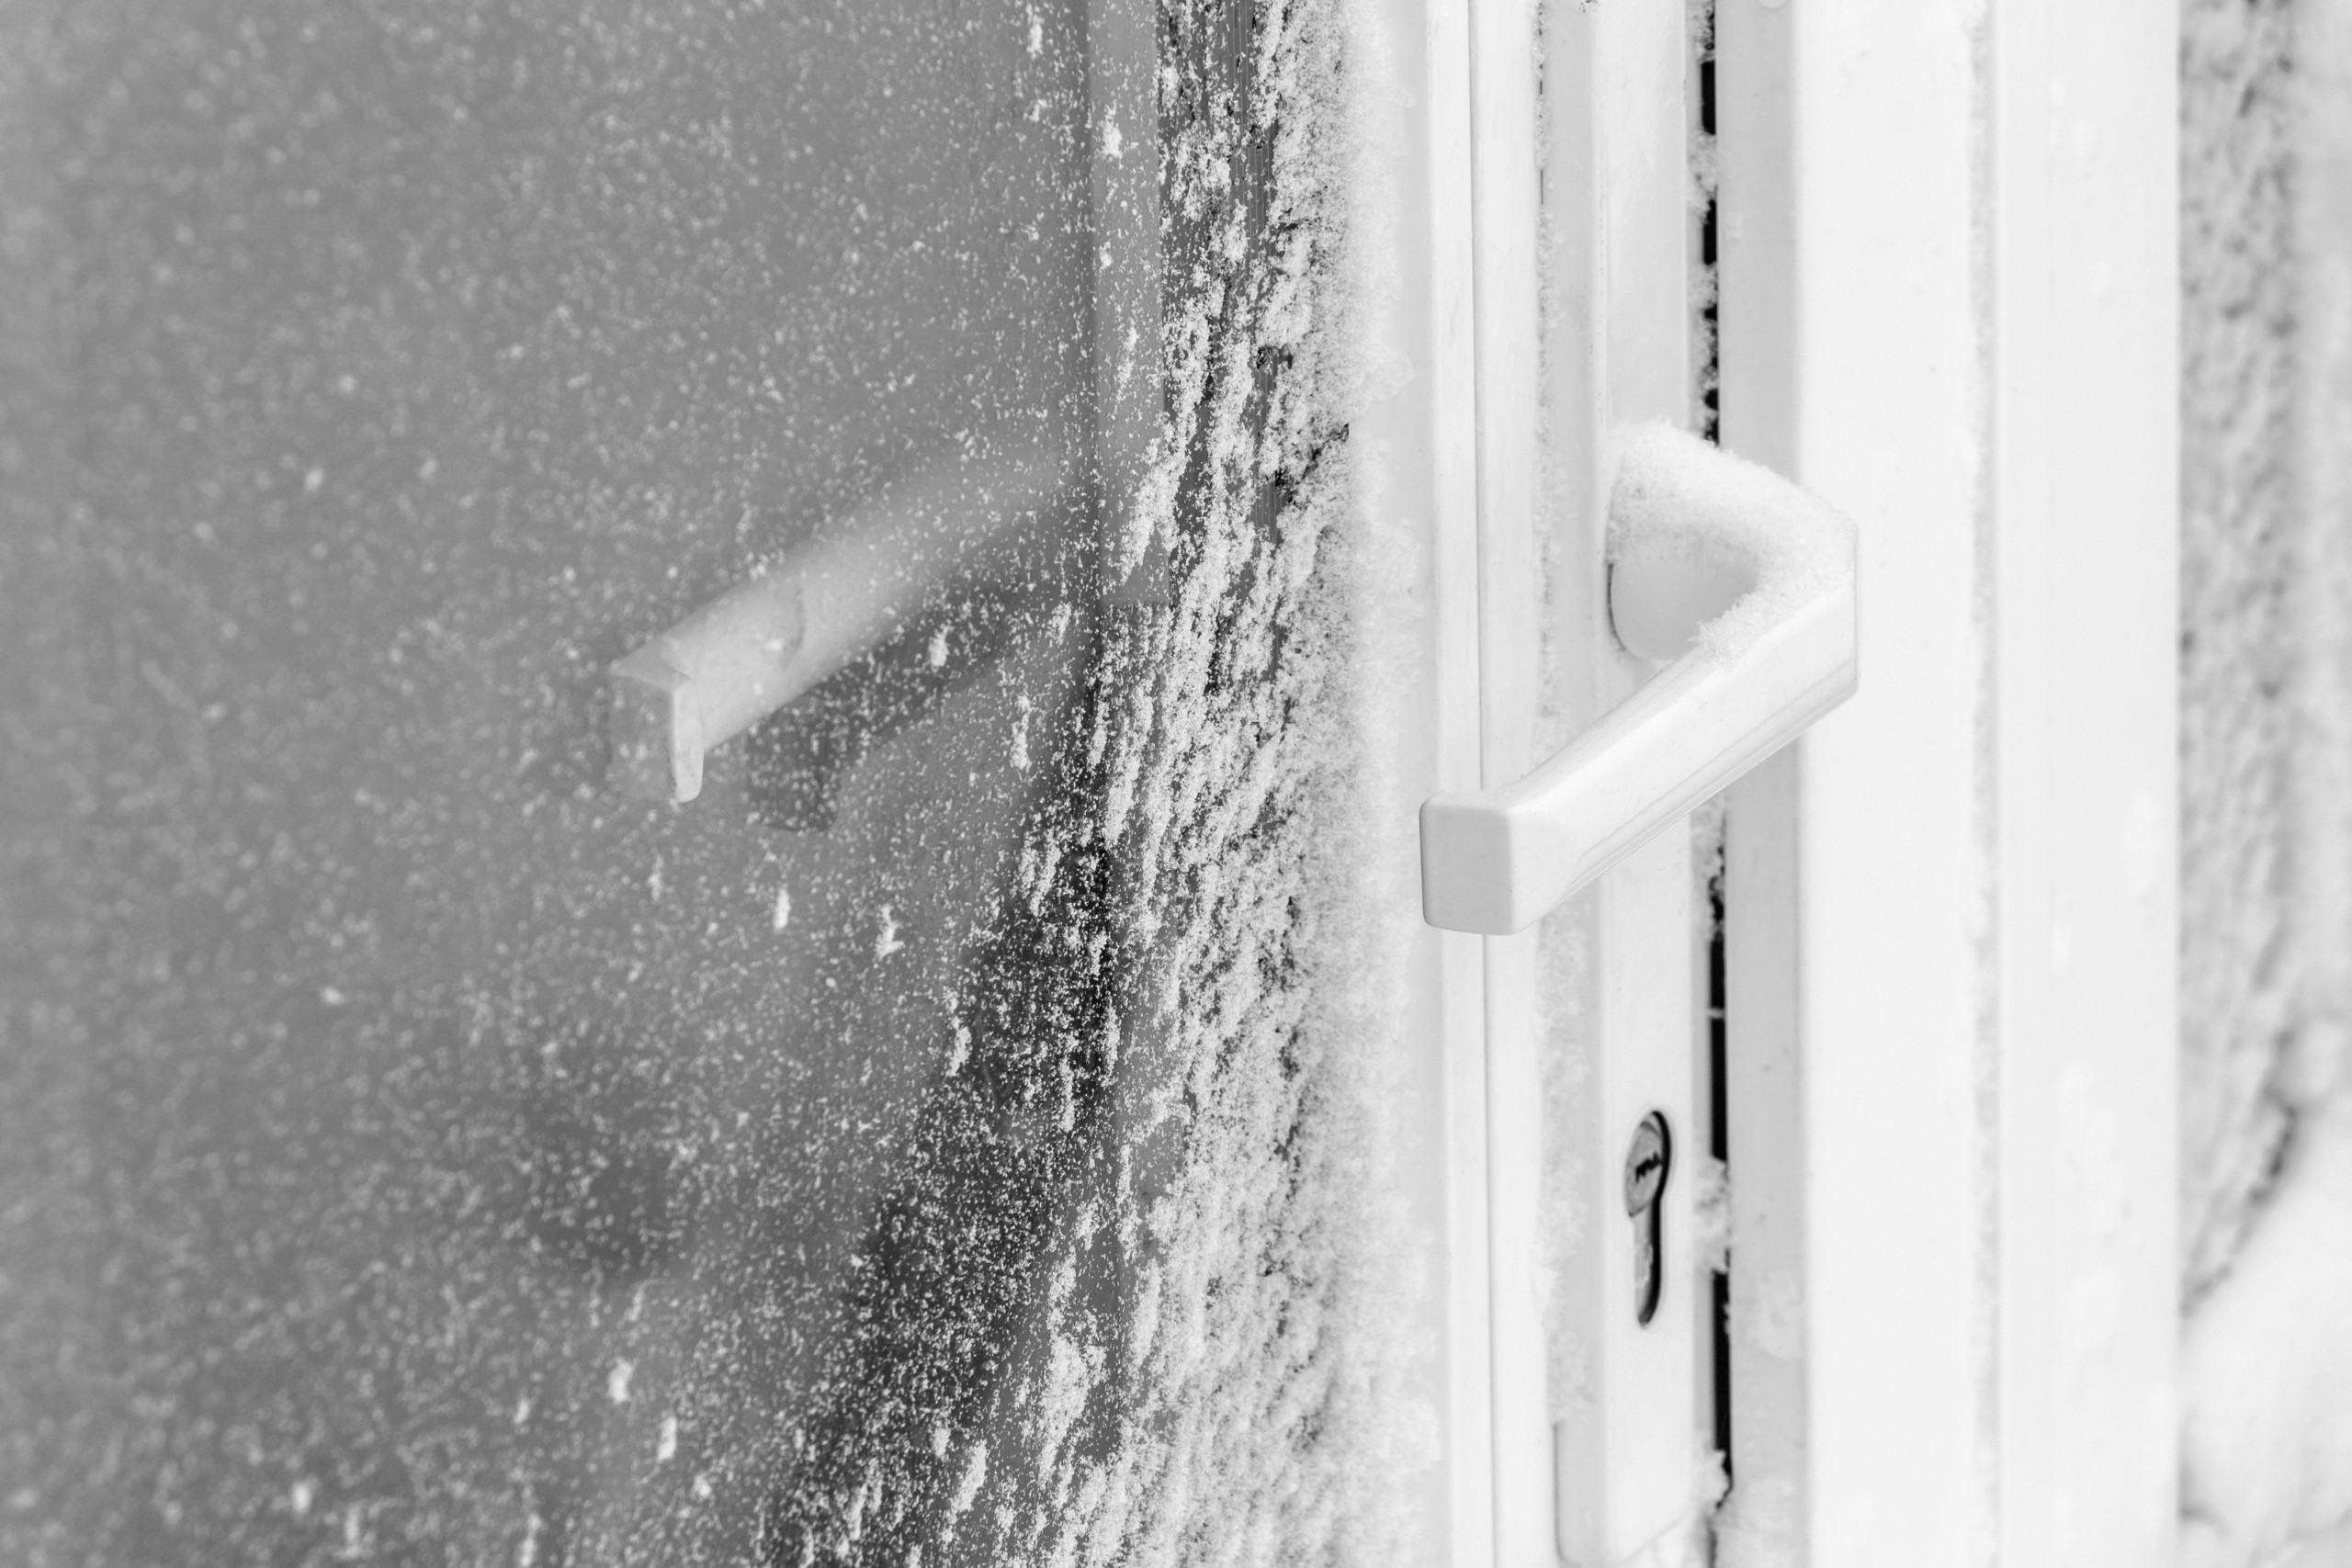 manilla de la puerta cubierta de nieve tras la tormenta de nieve